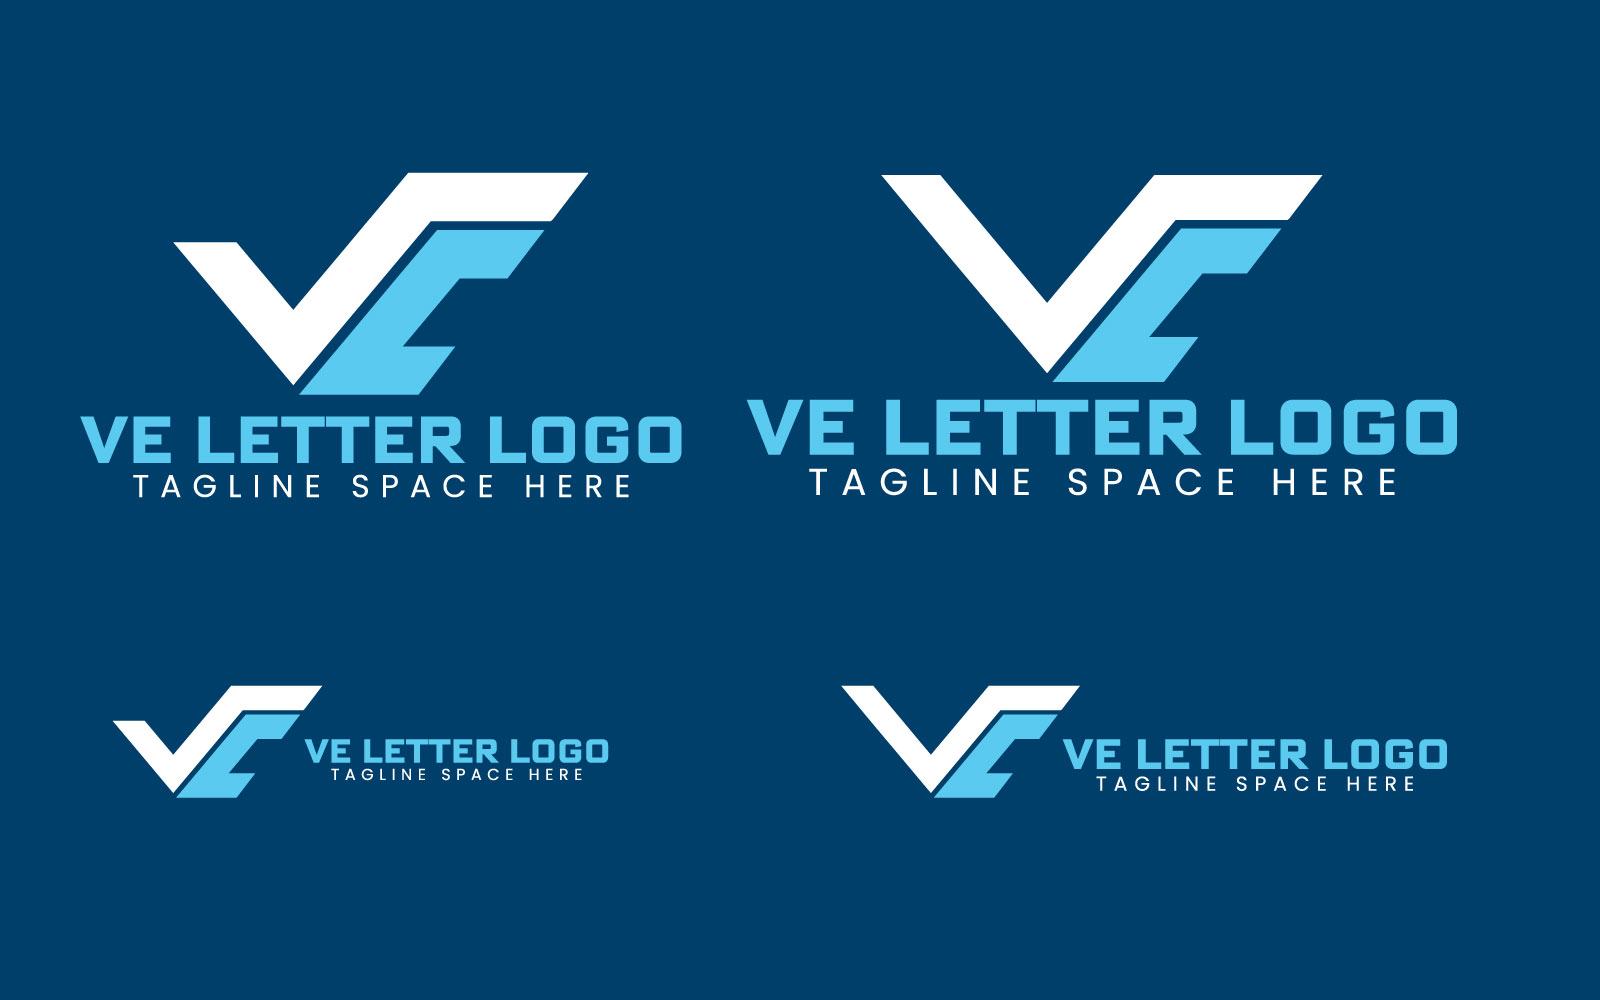 ve letter logo jpp 273